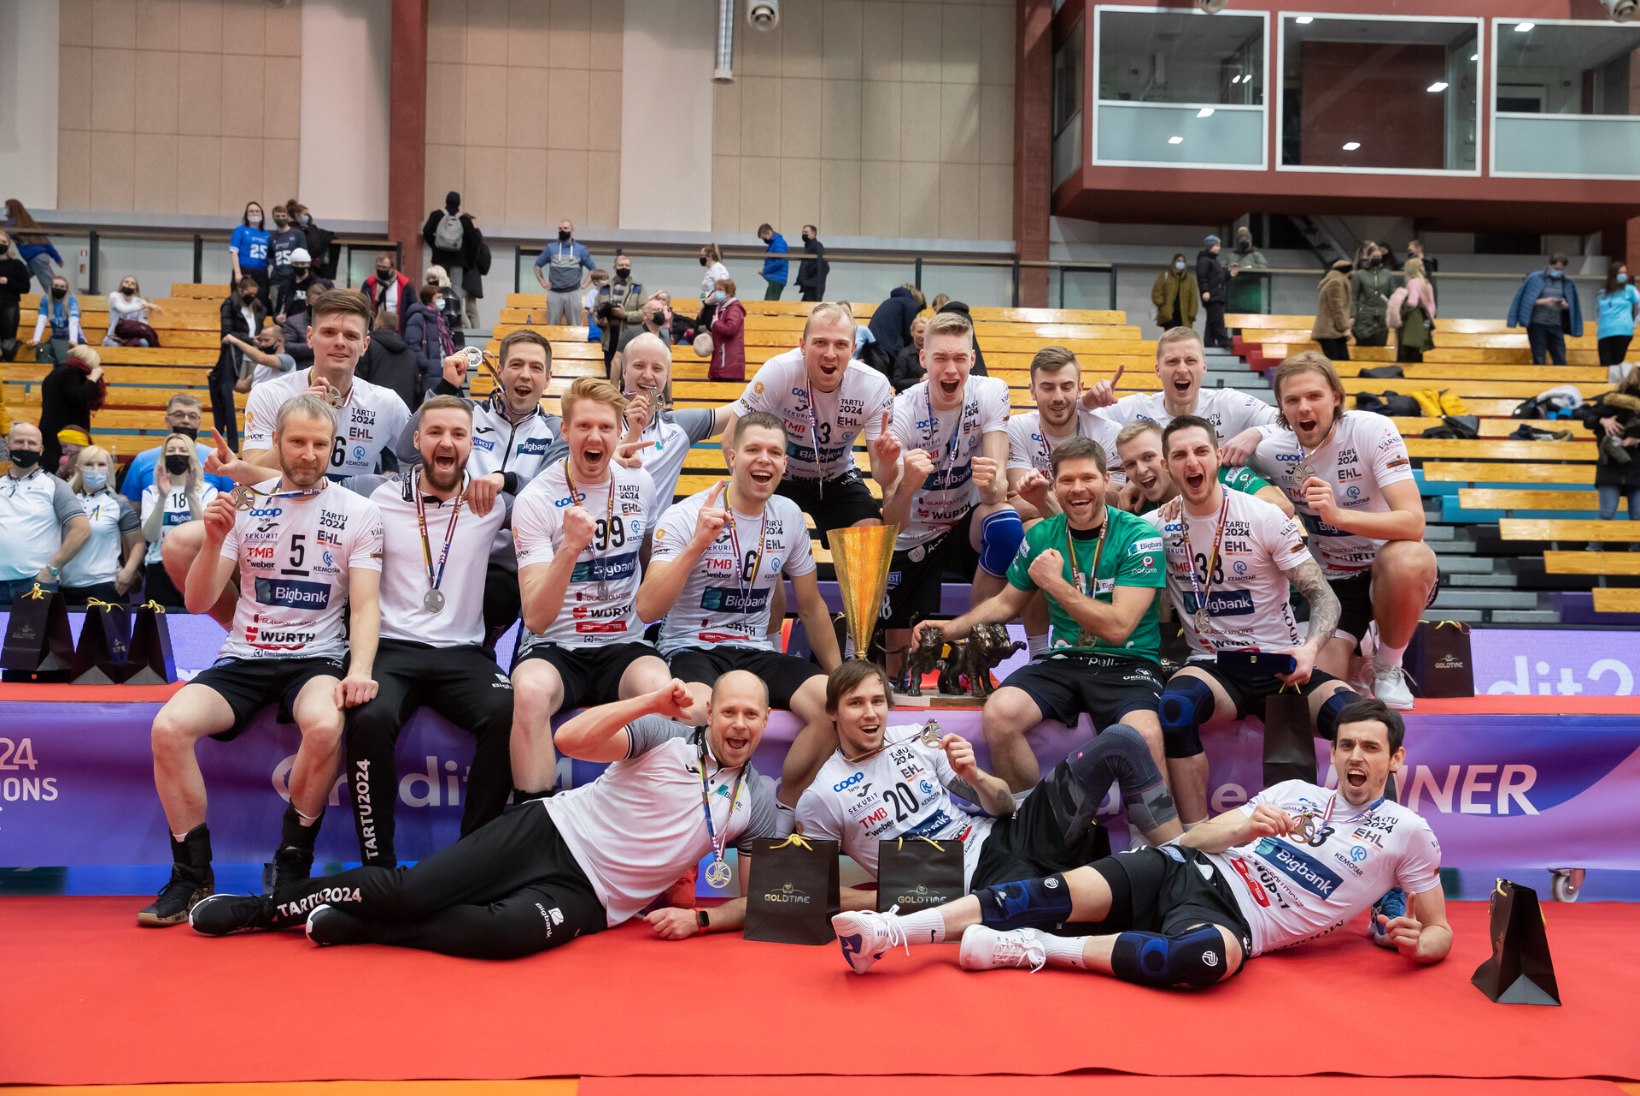 GALERII | Tartu Bigbank krooniti Balti liiga meistriks, kuid võitjate peas on muremõtted Ukraina pärast